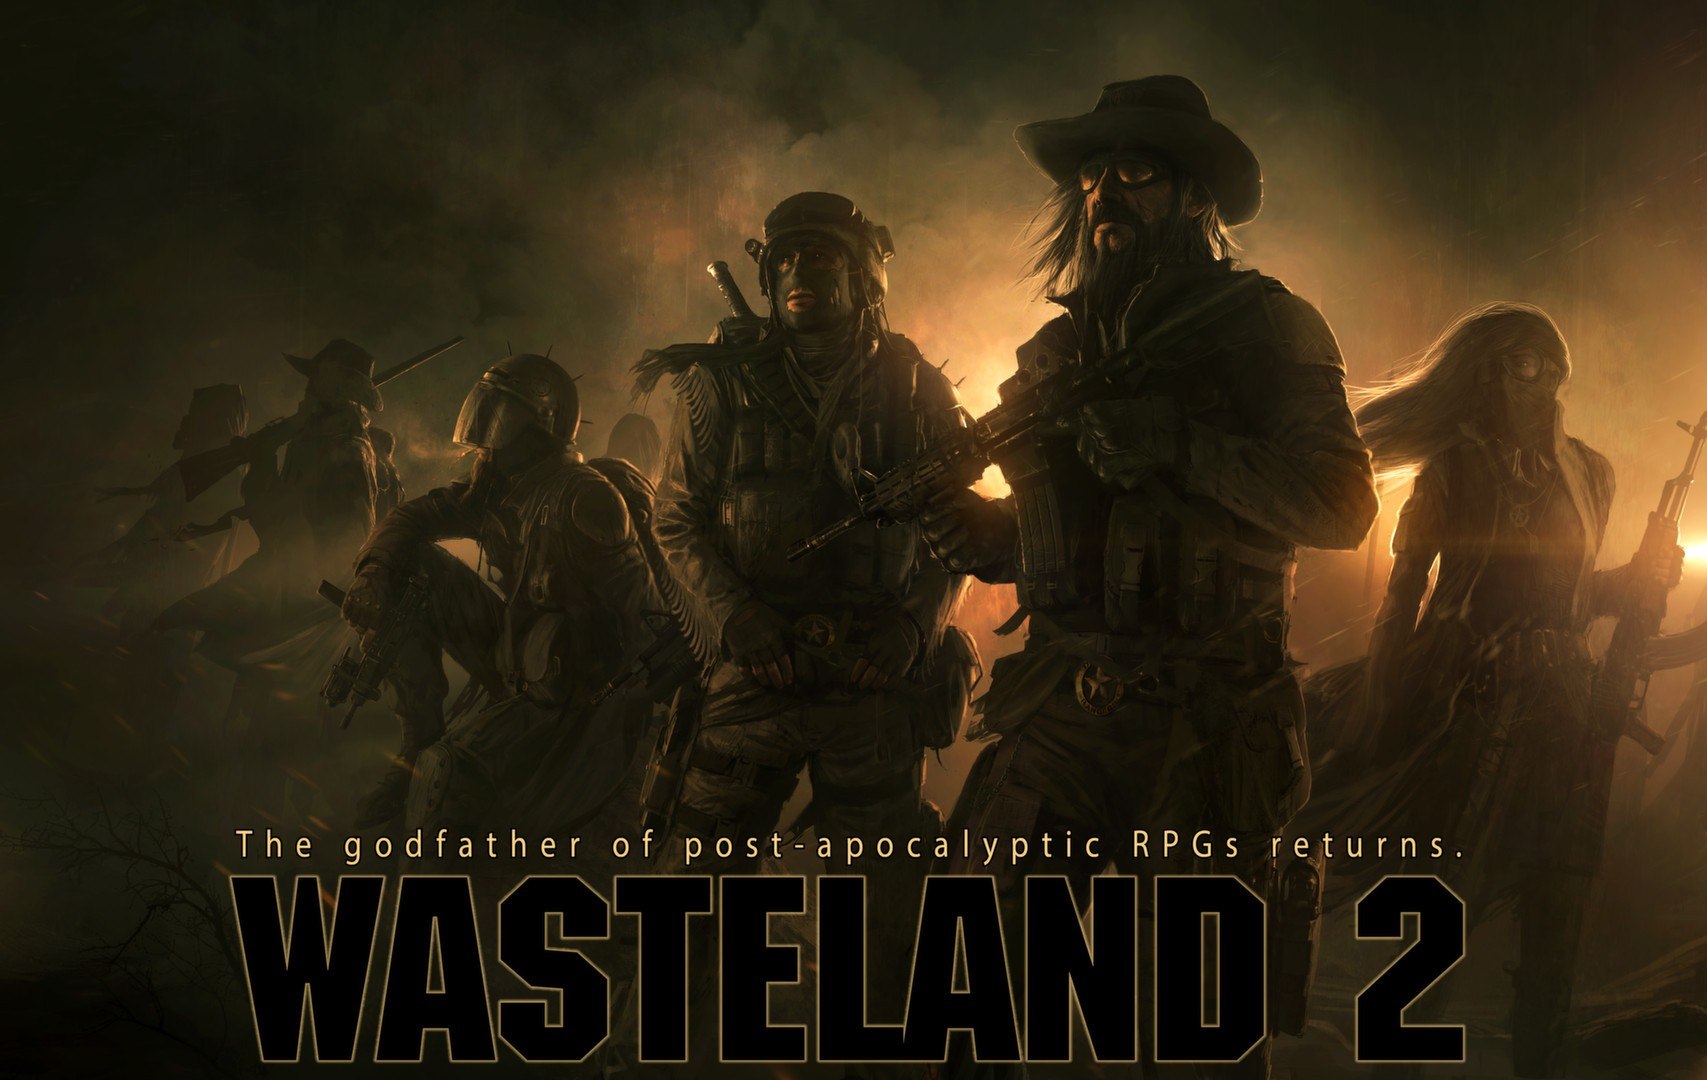 Wasteland 2: Director's Cut Steam CD Key